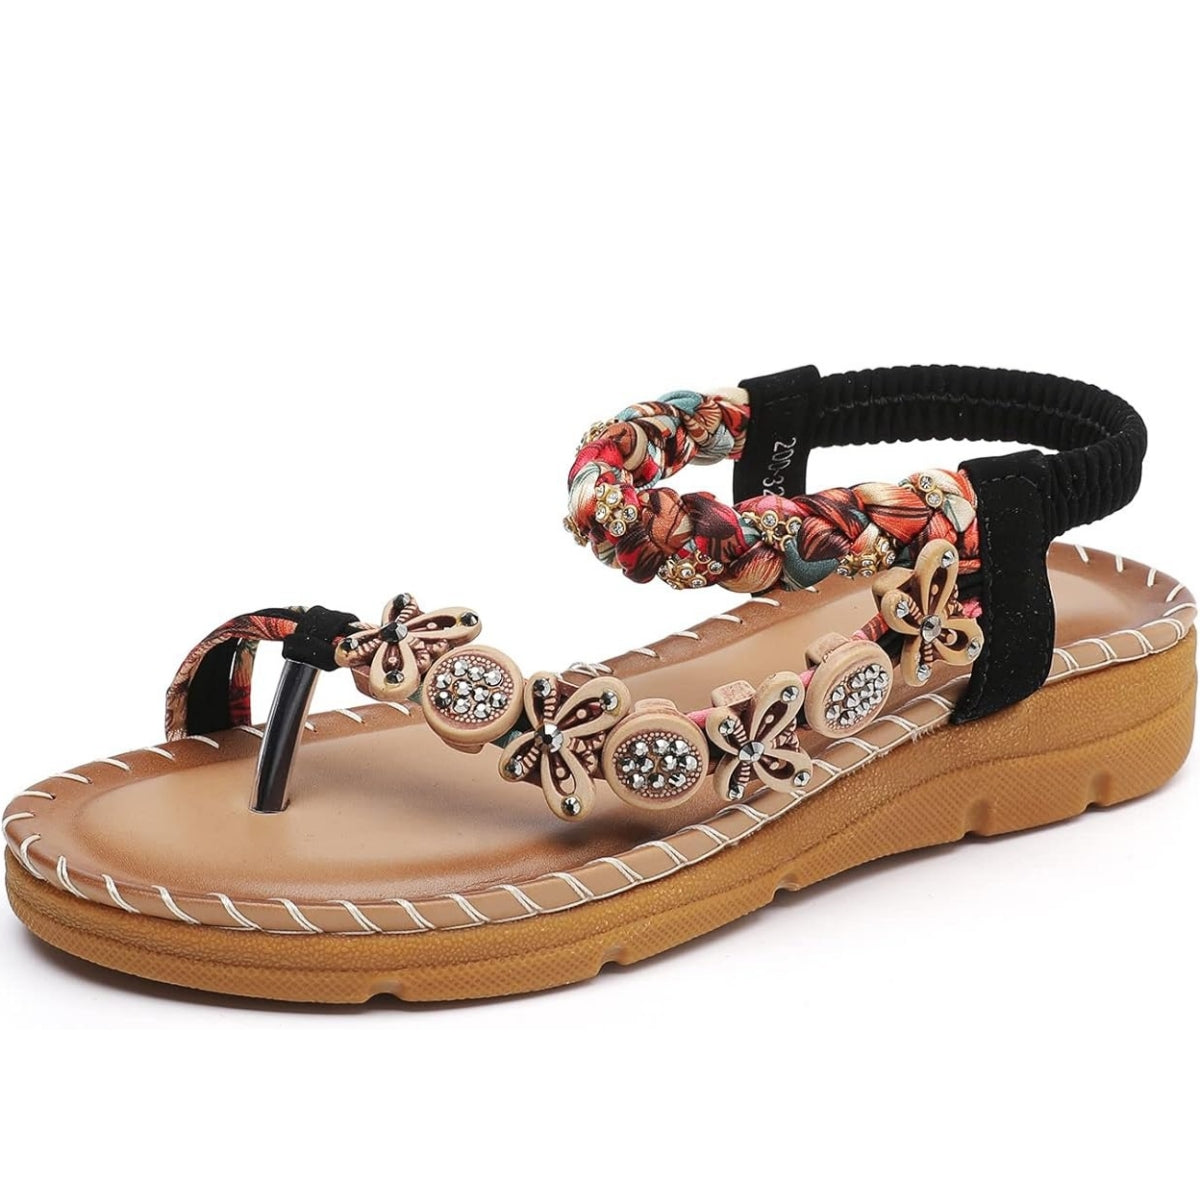 Women's Flats Sandals Bohemian Elastic Ankle Strap Comfortable Flip Flops | ARKGET